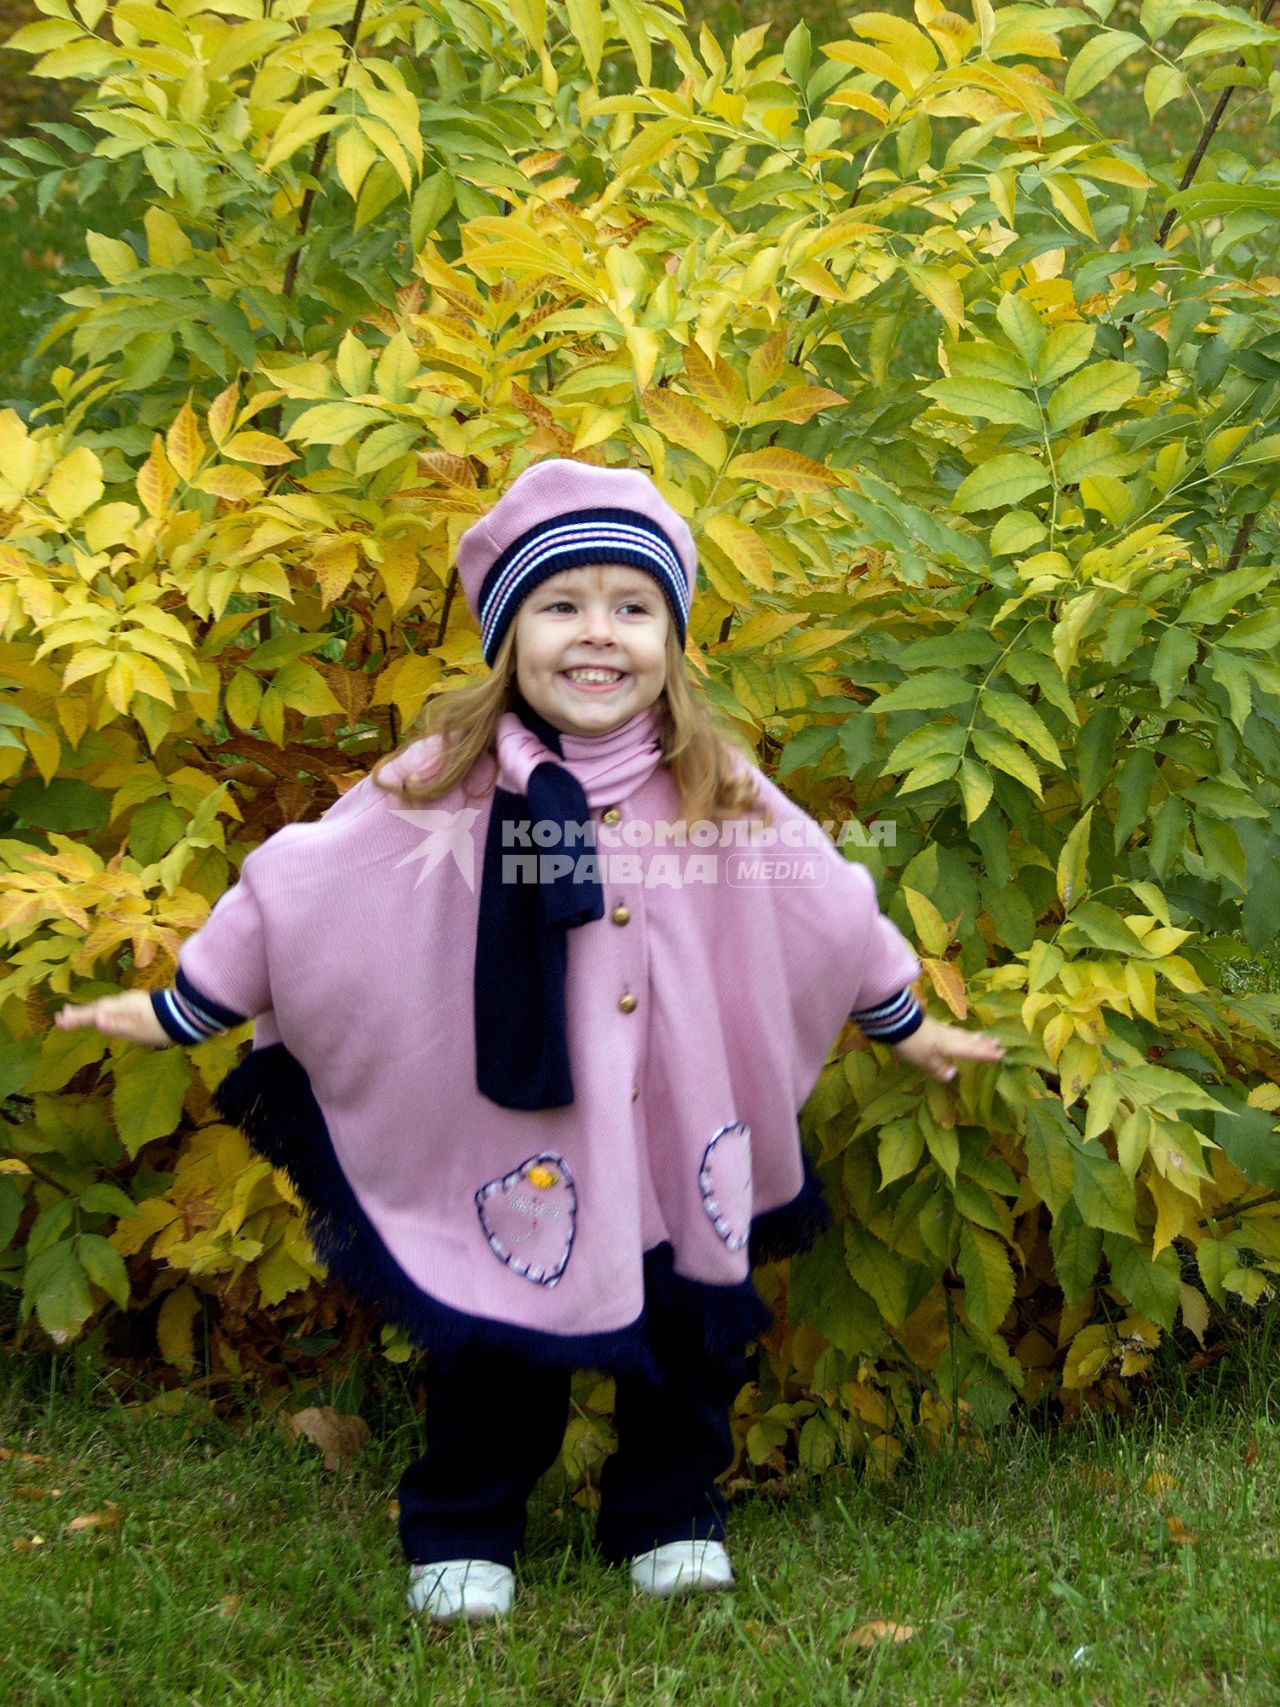 Ребенок около куста с пожелтевшей листвой.